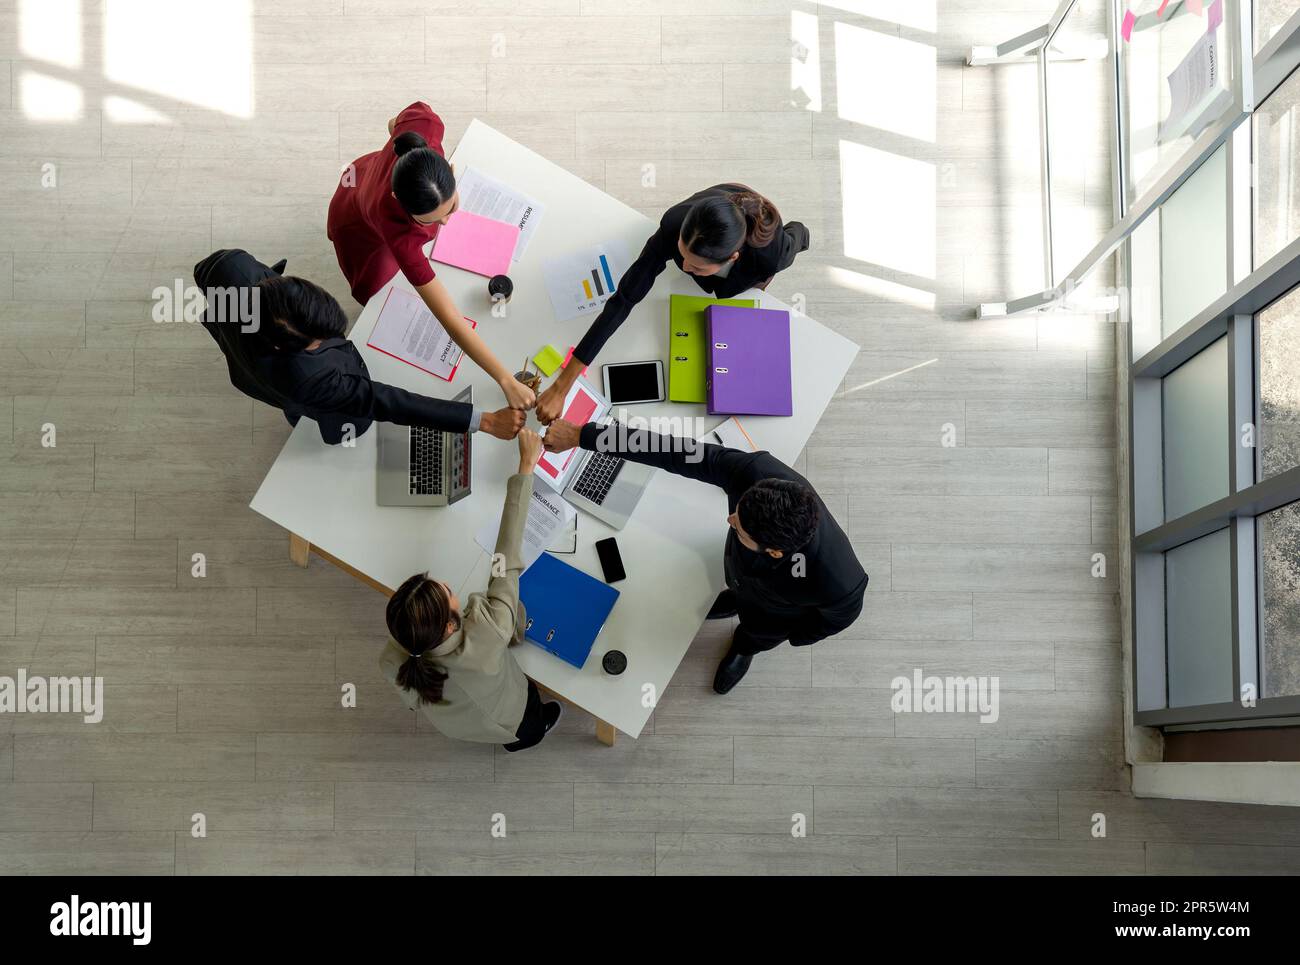 L'équipe de dirigeants d'entreprise se réunit dans un bureau moderne avec un ordinateur portable, une tablette, un téléphone portable et un café sur table. Concept de l'équipe d'entreprise People. Vue de dessus Banque D'Images